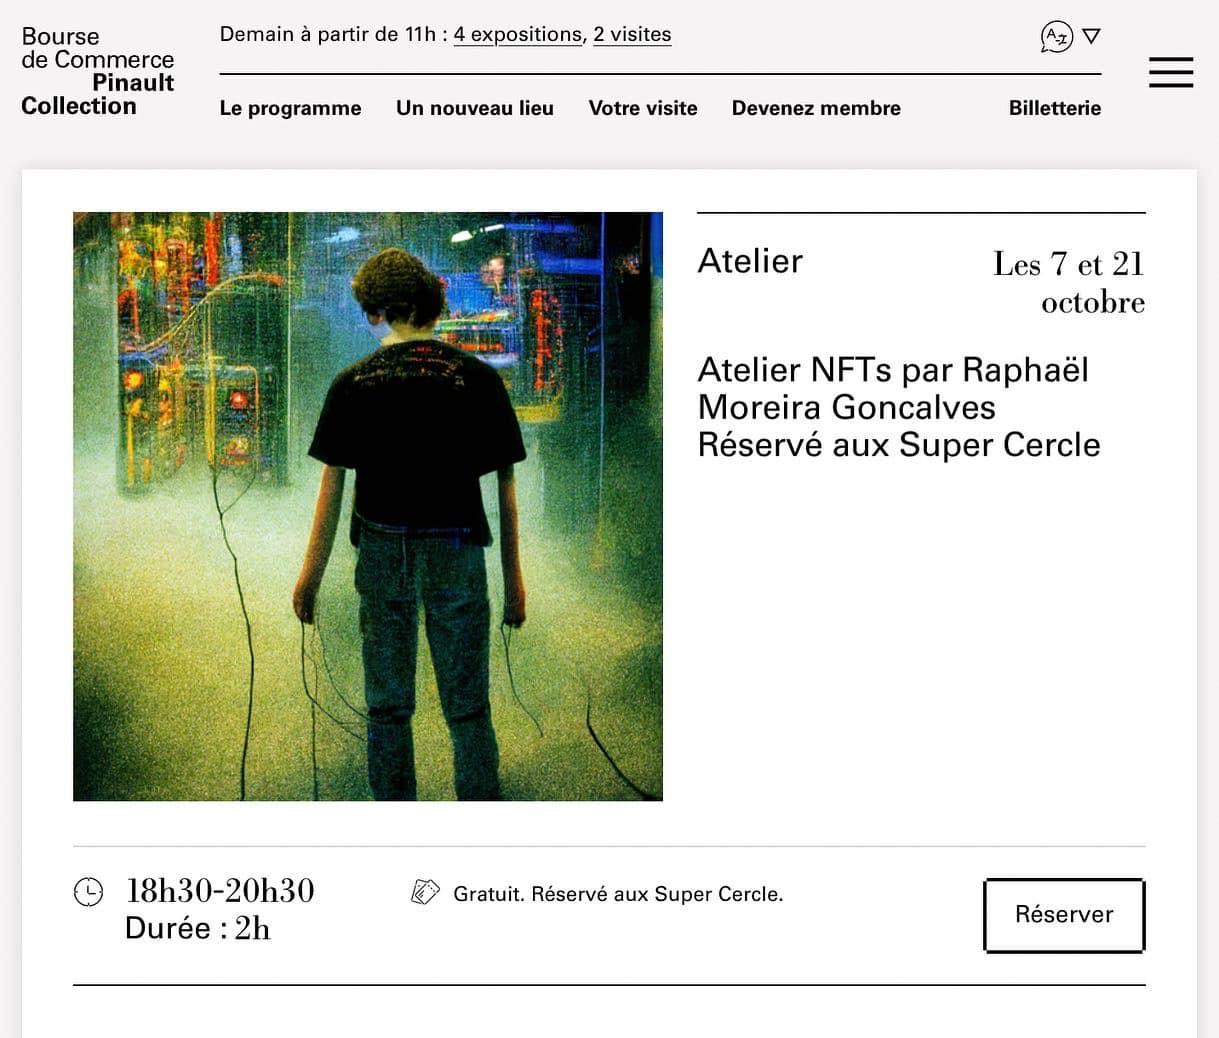 Workshop Artificial Intelligence NFT, Bourse de Commerce - Collection Pinault, Raphaël Moreira Gonçalves